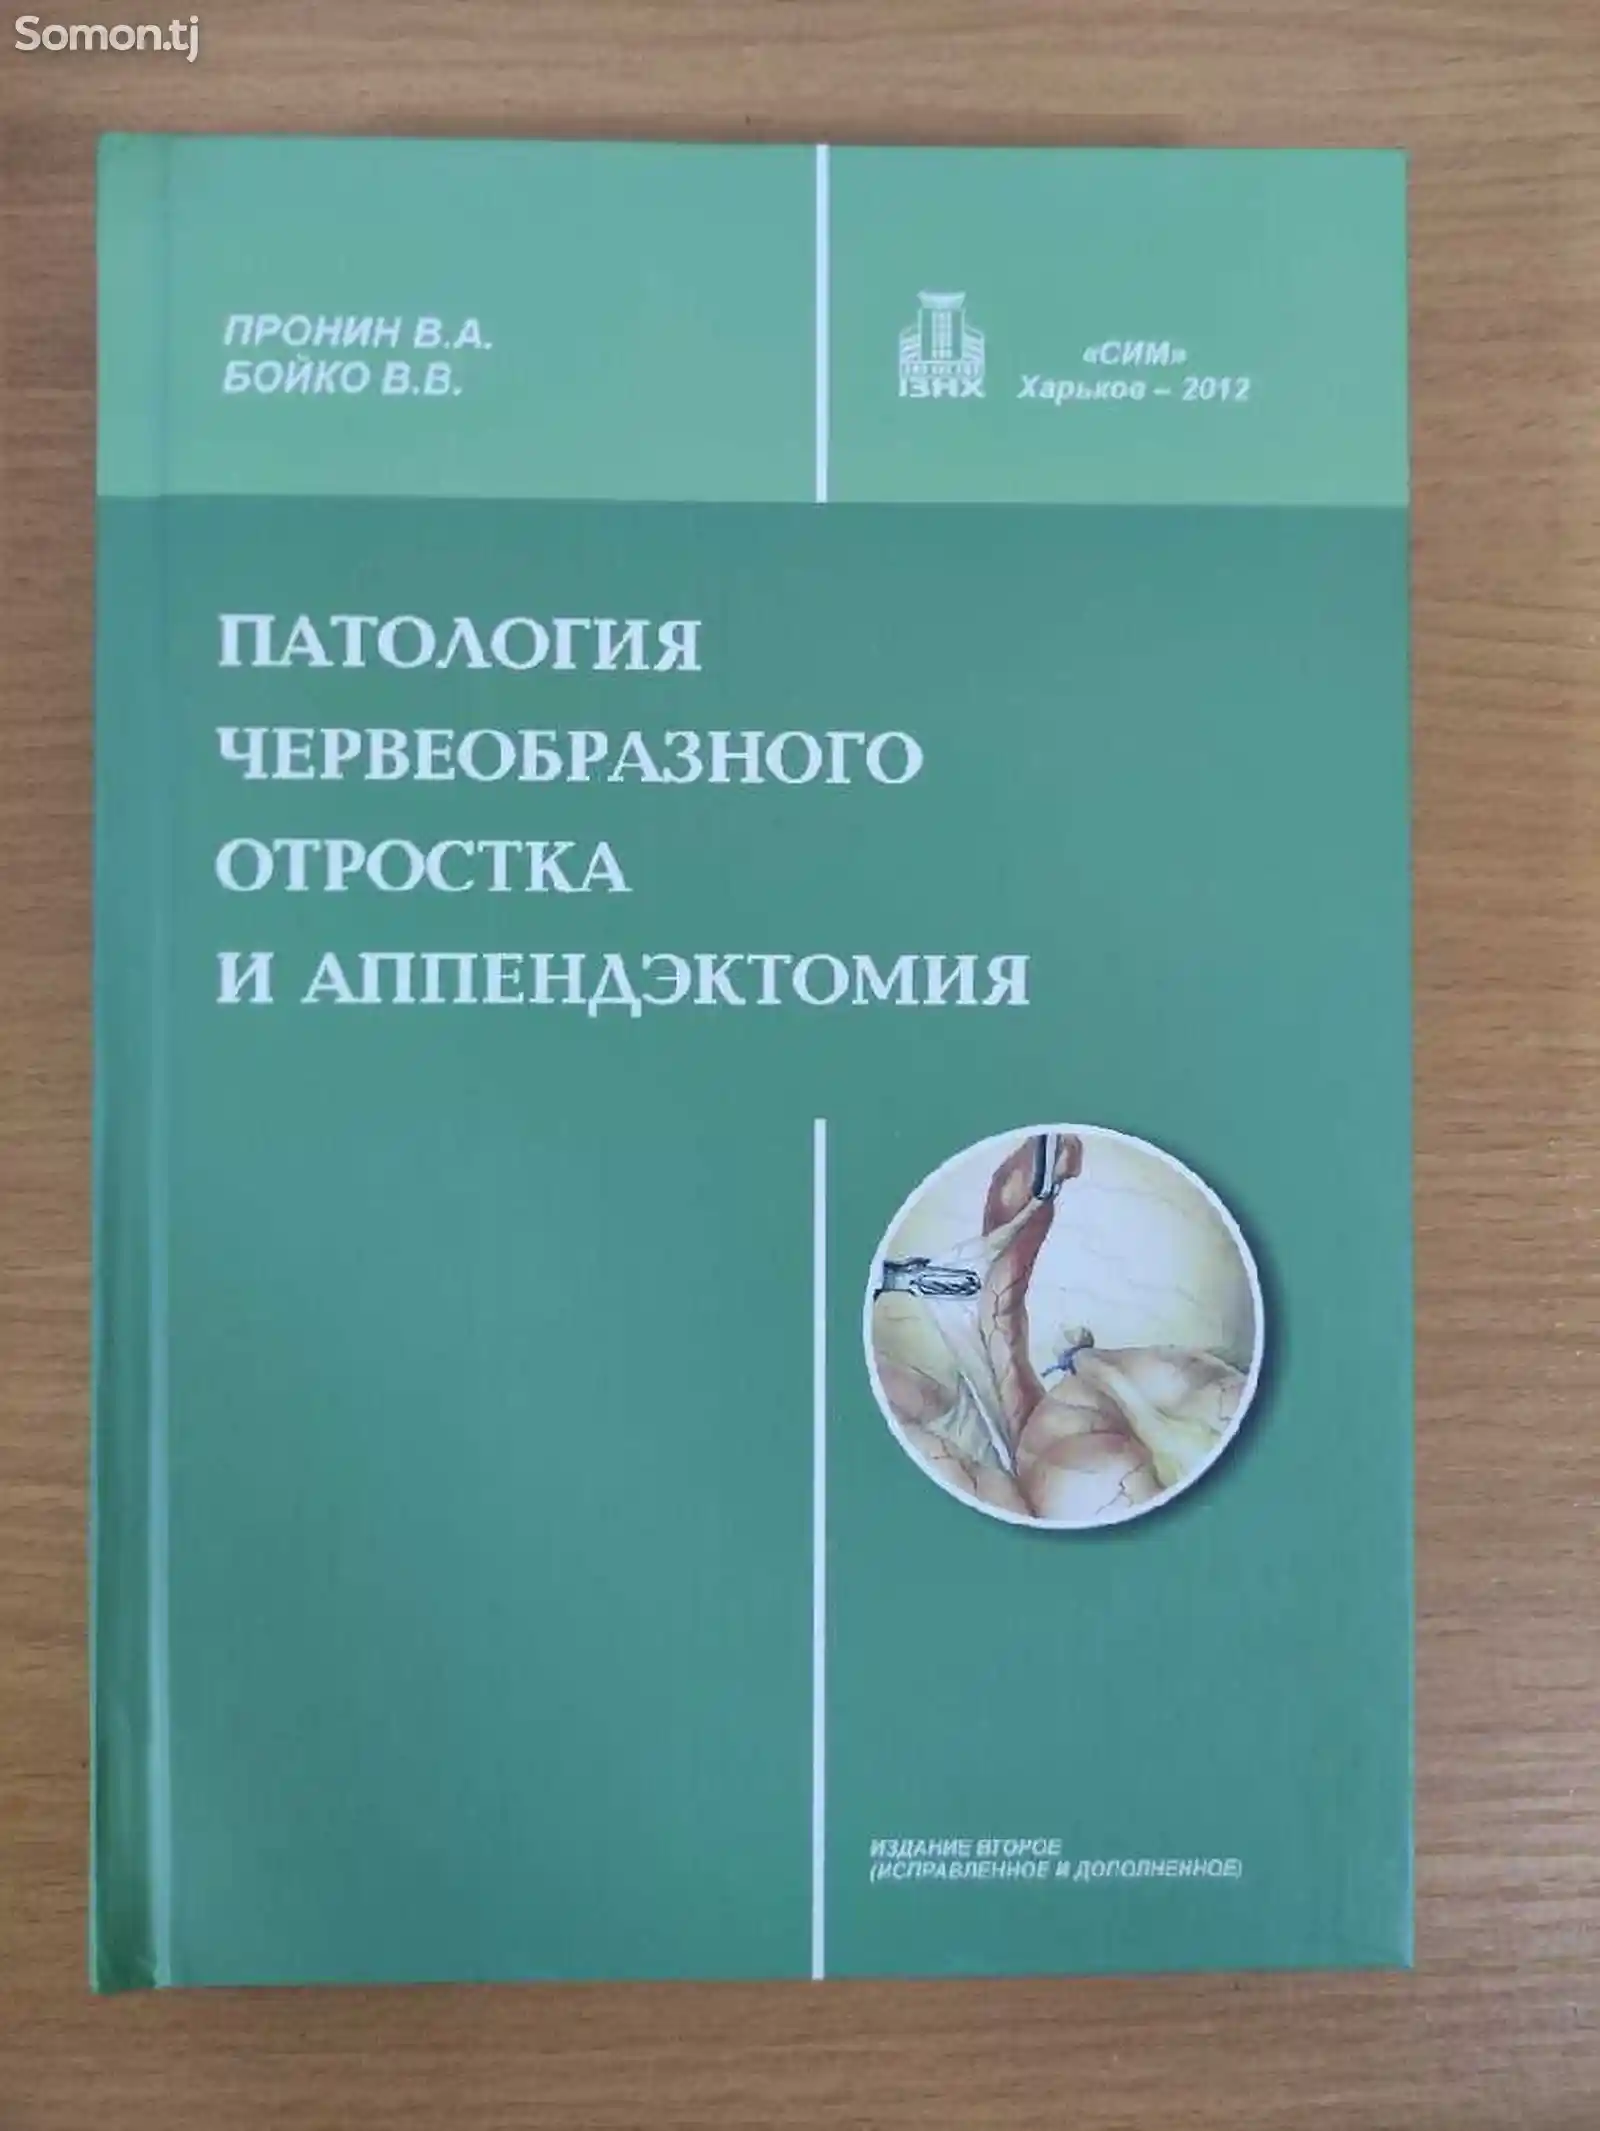 Книга Патология червеобразного отростка и аппендэктомия-1